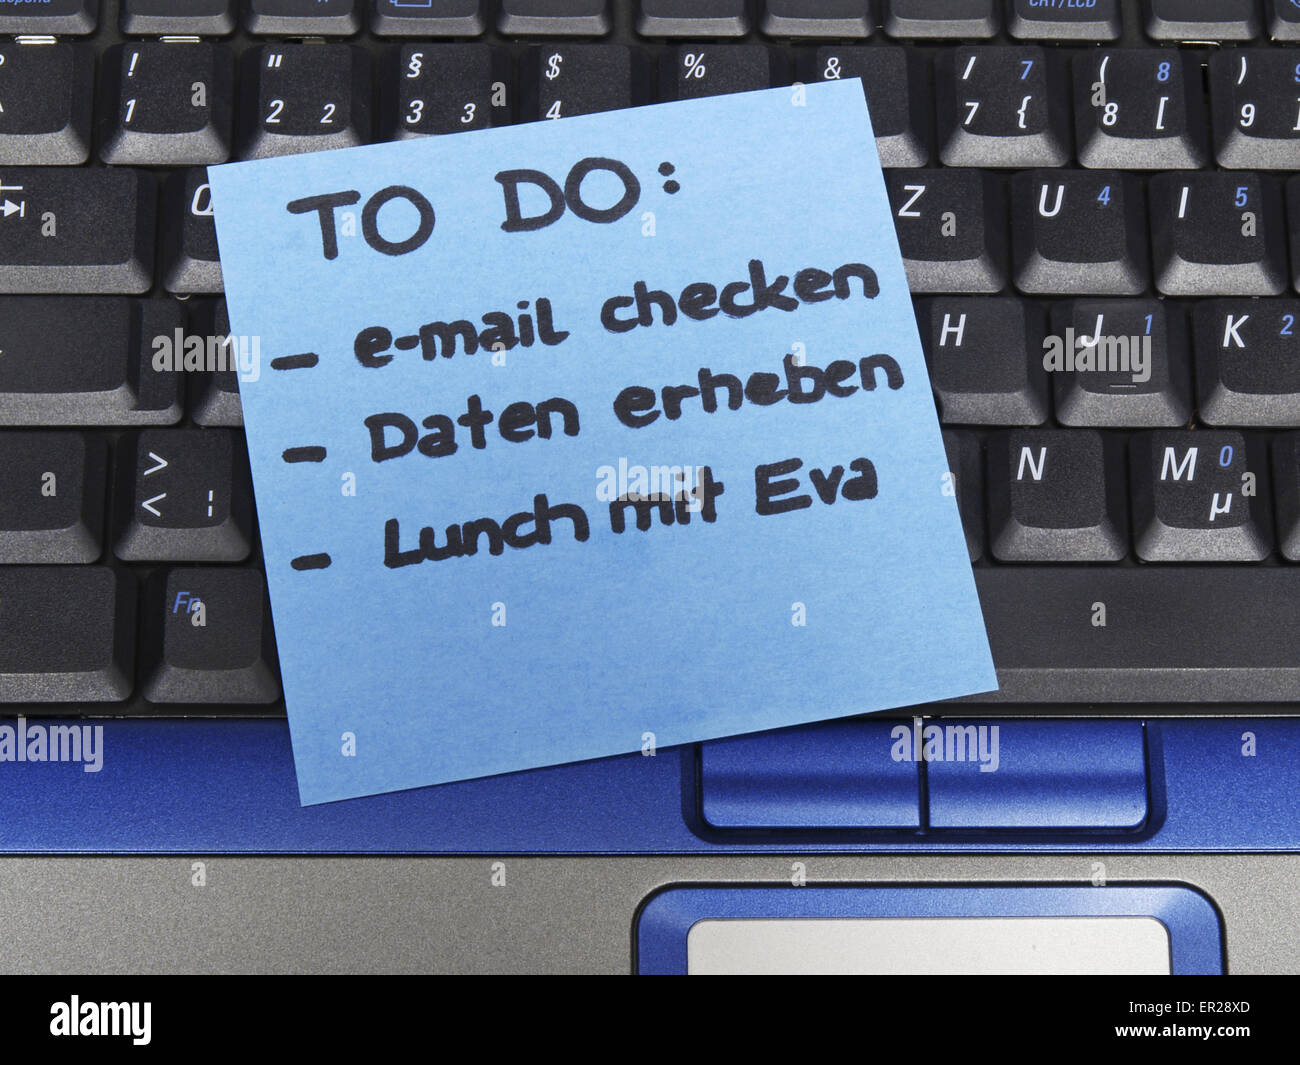 Memo note sur l'ordinateur portable afin de le faire e-mail checken, Daten erheben, déjeuner mit Eva, de faire vérifier le courrier électronique, la collecte de données, le déjeuner avec Eva Banque D'Images